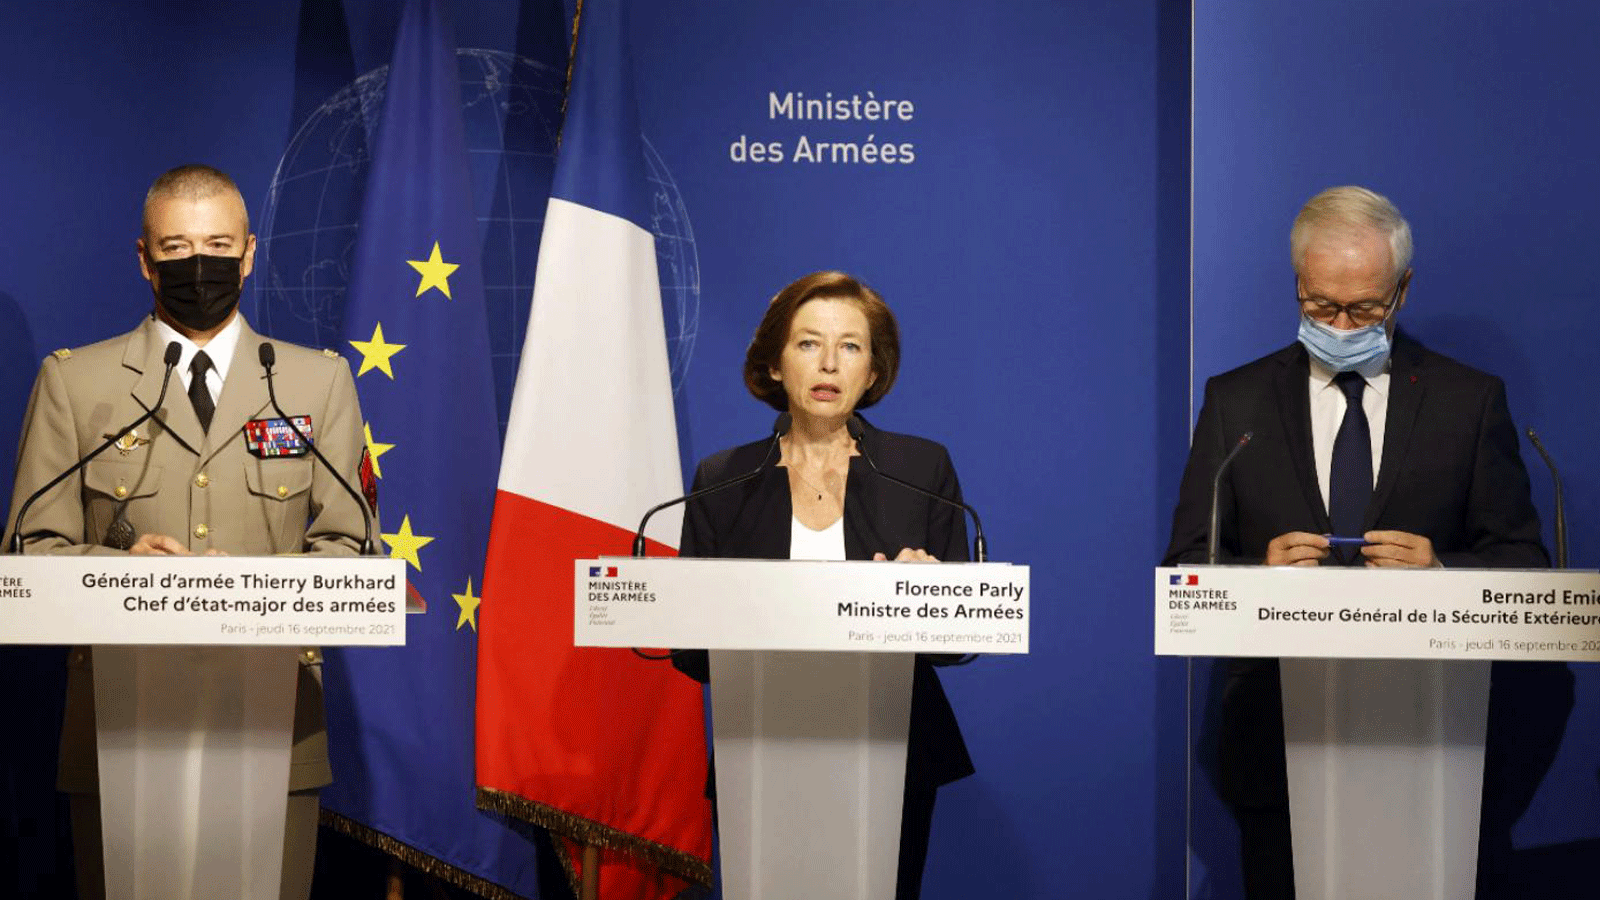 وزيرة الجيوش الفرنسية فلورانس بارلي (في الوسط ) قالت خلال المؤتمر الصحفي أن الصحراوي هو الشخص الذي كنا نبحث عنه